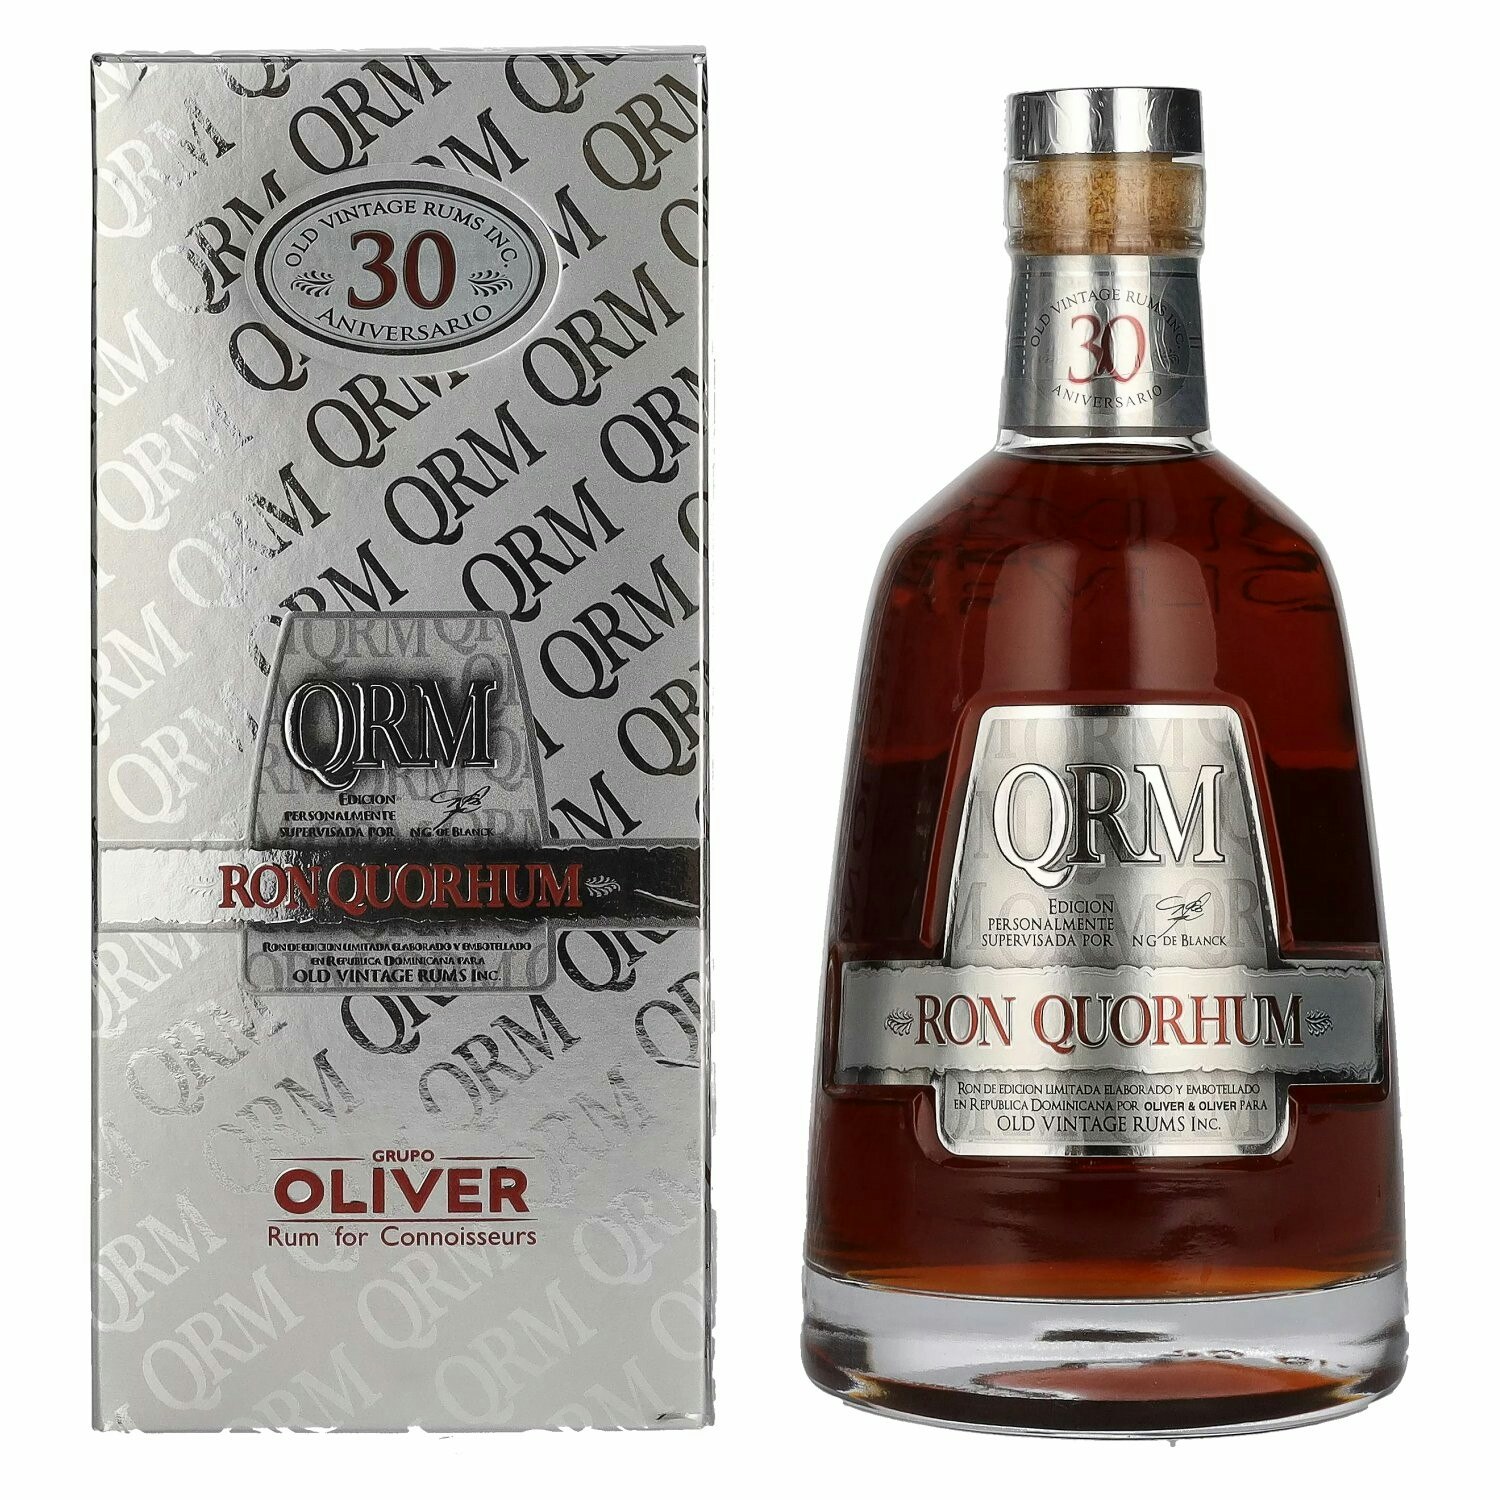 Ron Quorhum 30 Aniversario Old Vintage Rum 40% Vol. 0,7l in Giftbox